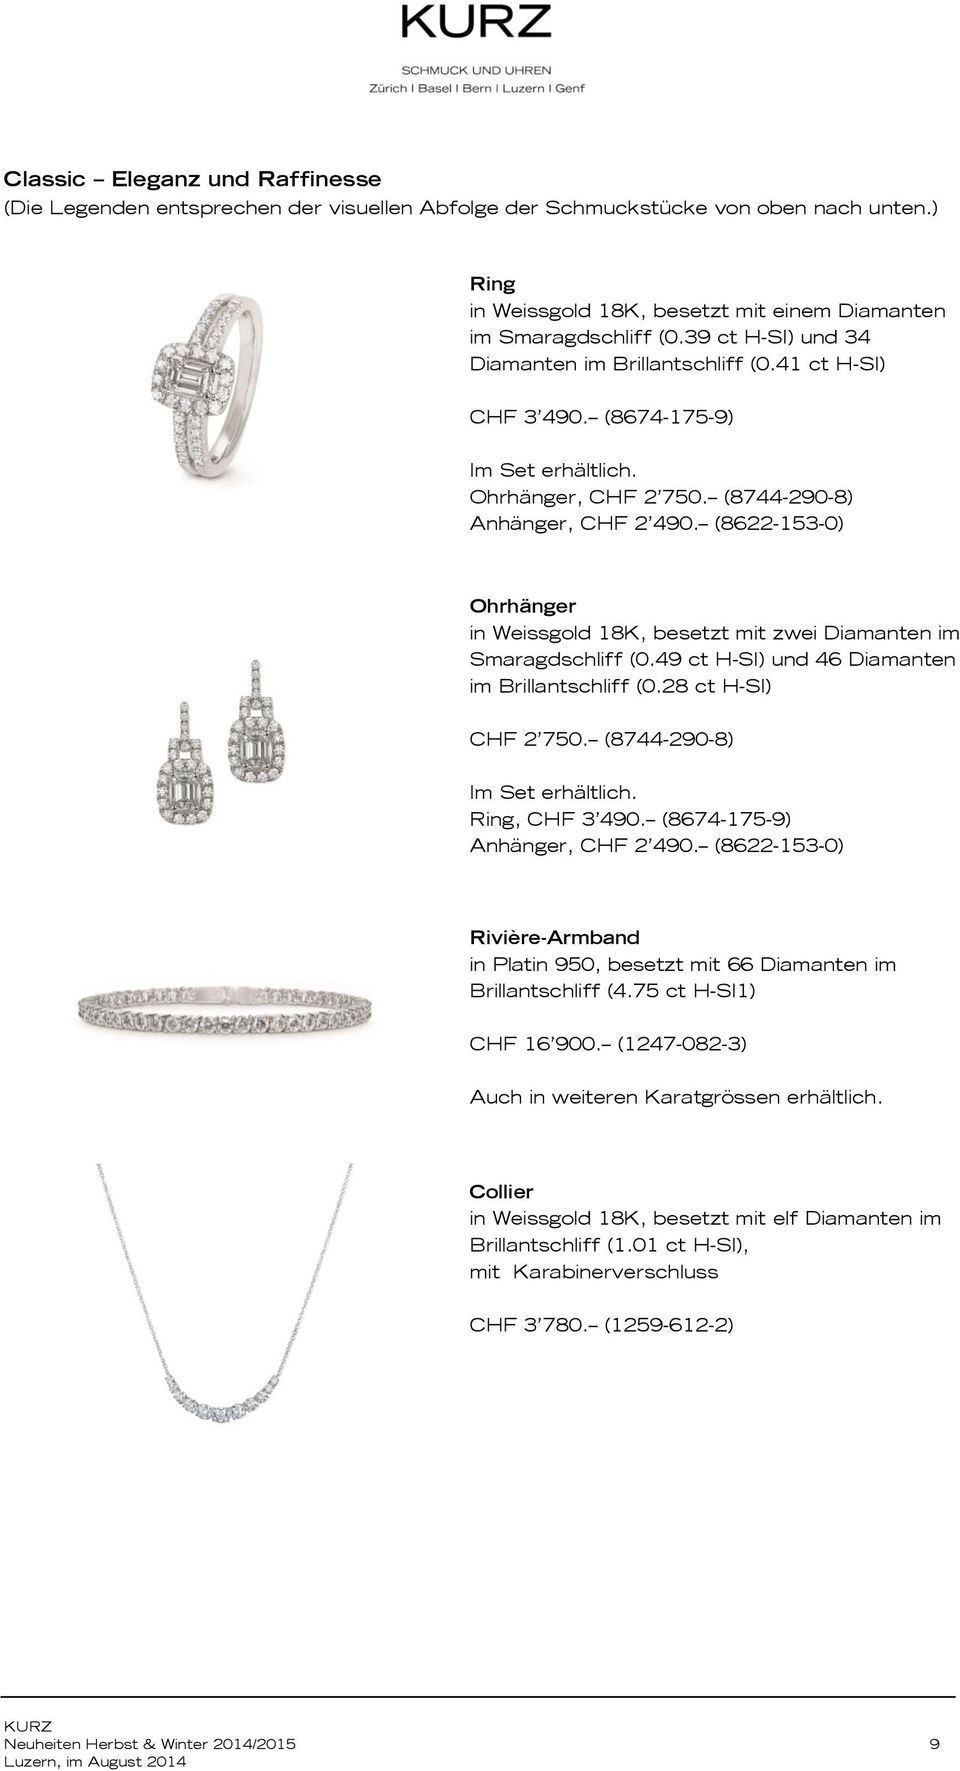 (8622-153-0) Ohrhänger in Weissgold 18K, besetzt mit zwei Diamanten im Smaragdschliff (0.49 ct H-SI) und 46 Diamanten im Brillantschliff (0.28 ct H-SI) CHF 2 750. (8744-290-8), CHF 3 490.